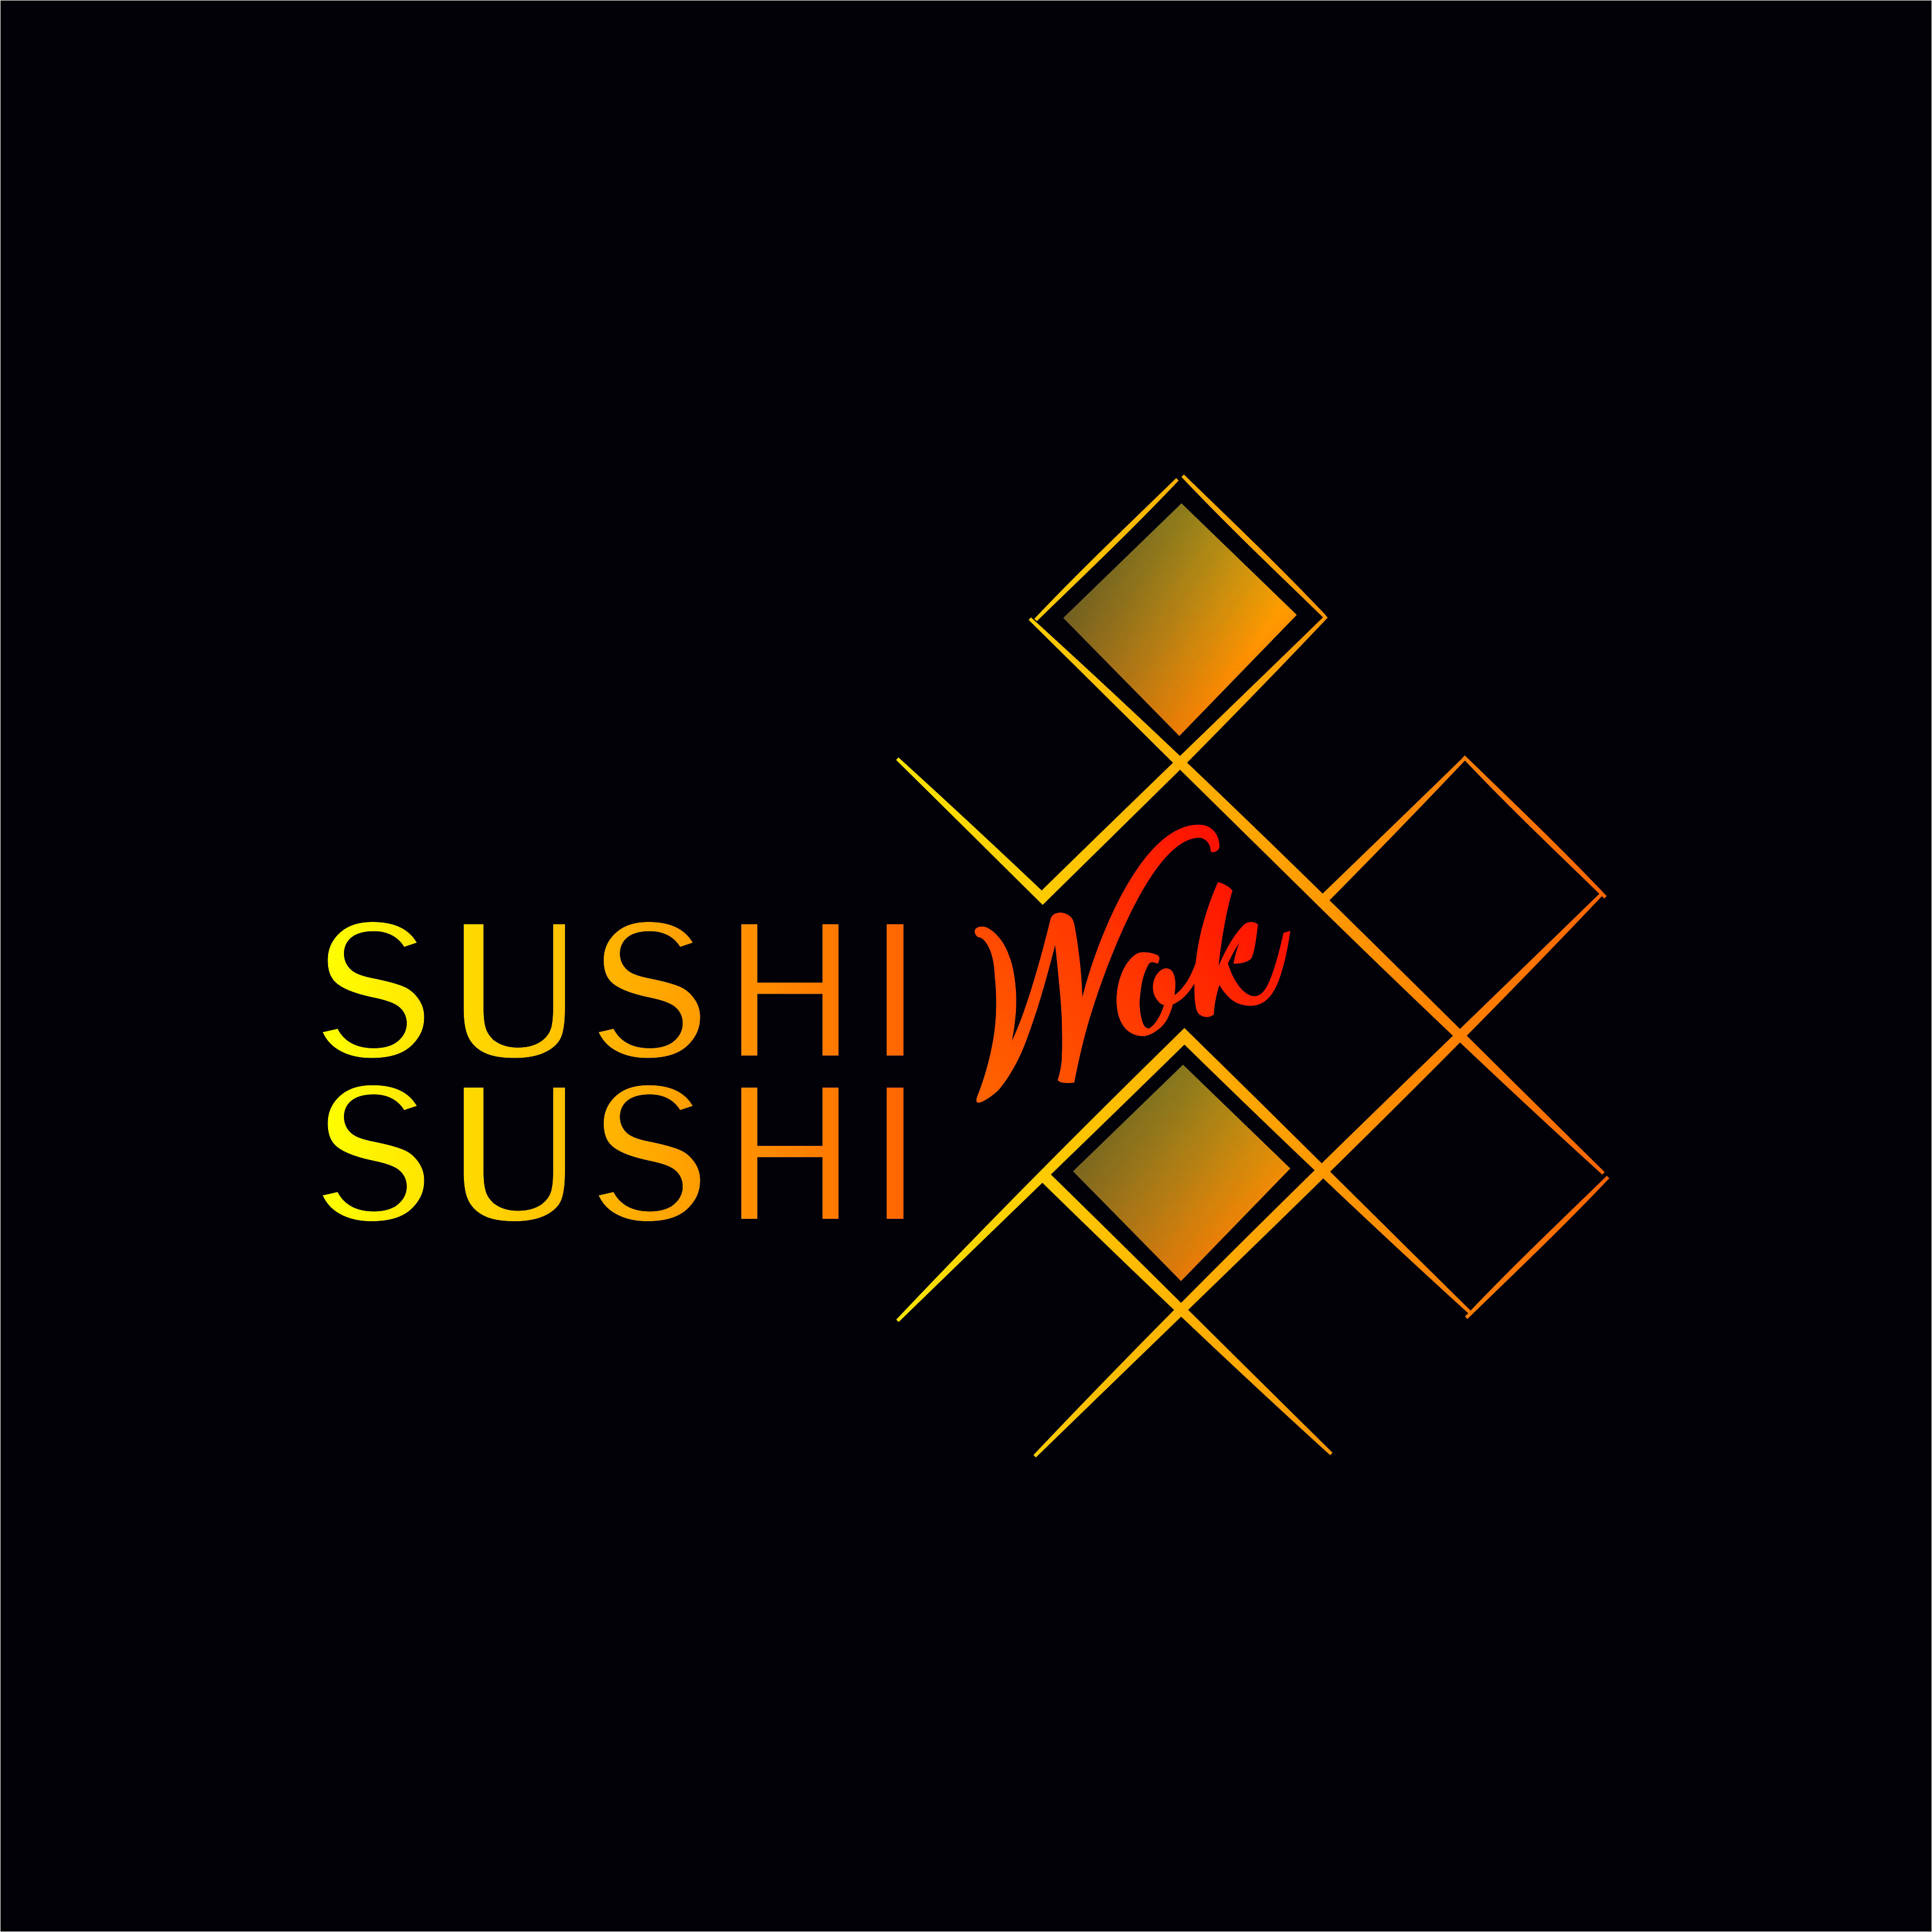 Sushi Sushi Wok